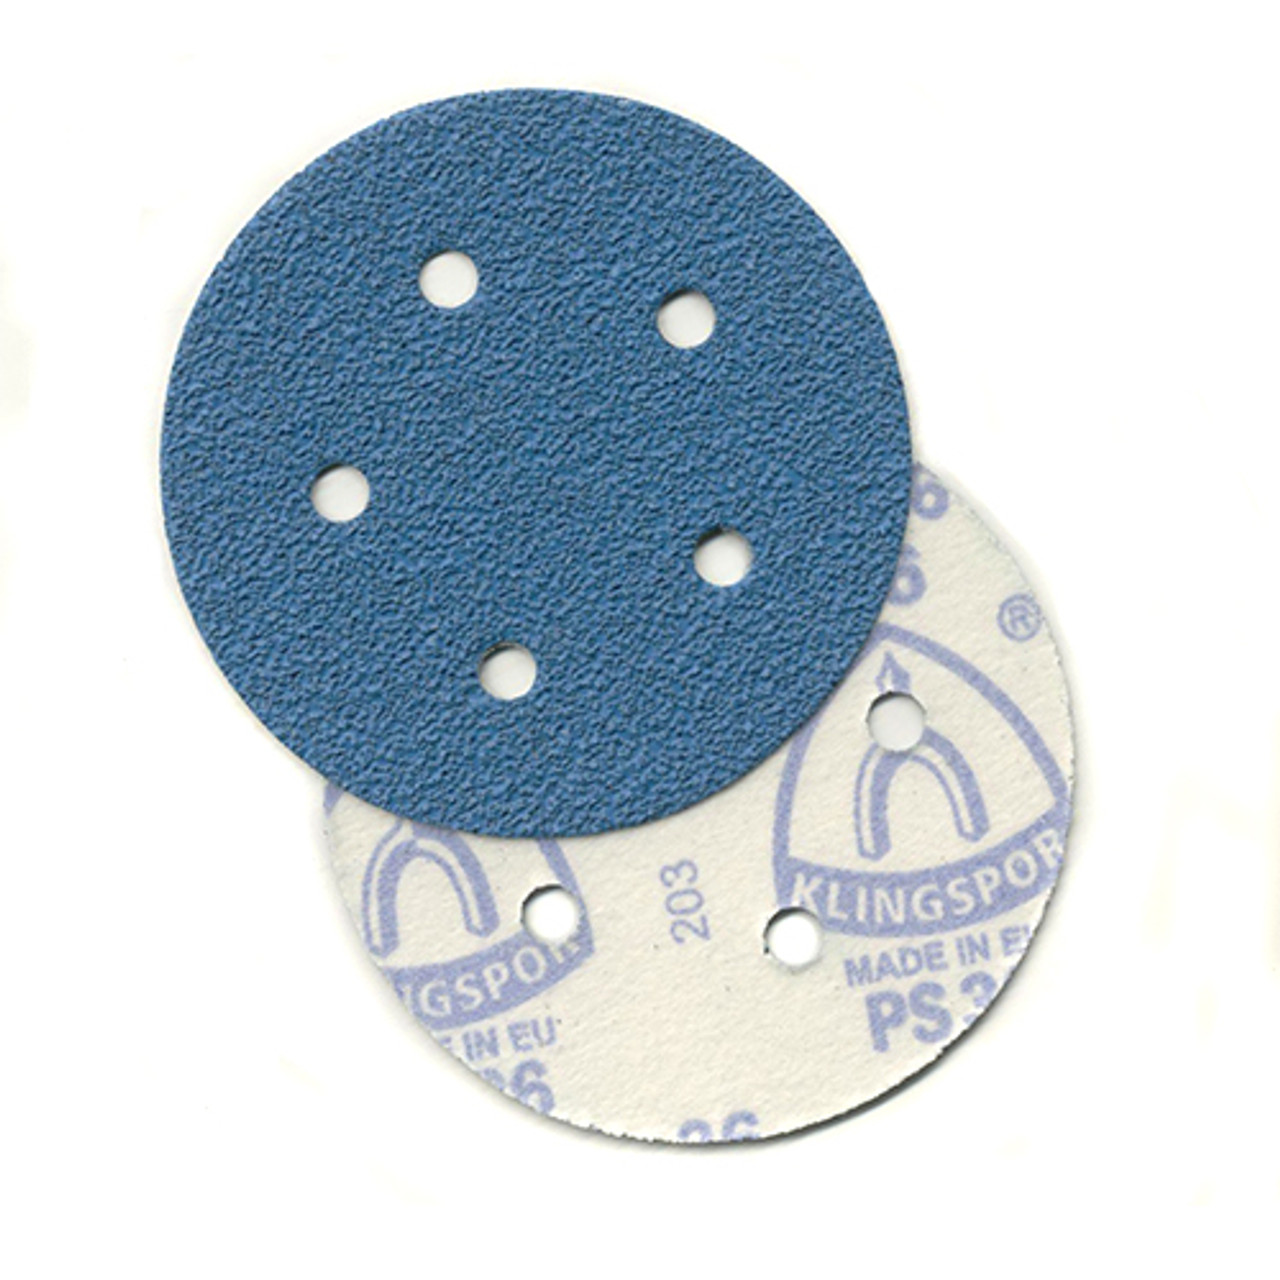 Klingspor Abrasives AZ-Plus Alumina Zirconia, 5"x 5 Hole, Hook & Loop, 150 Grit Discs, 10pk